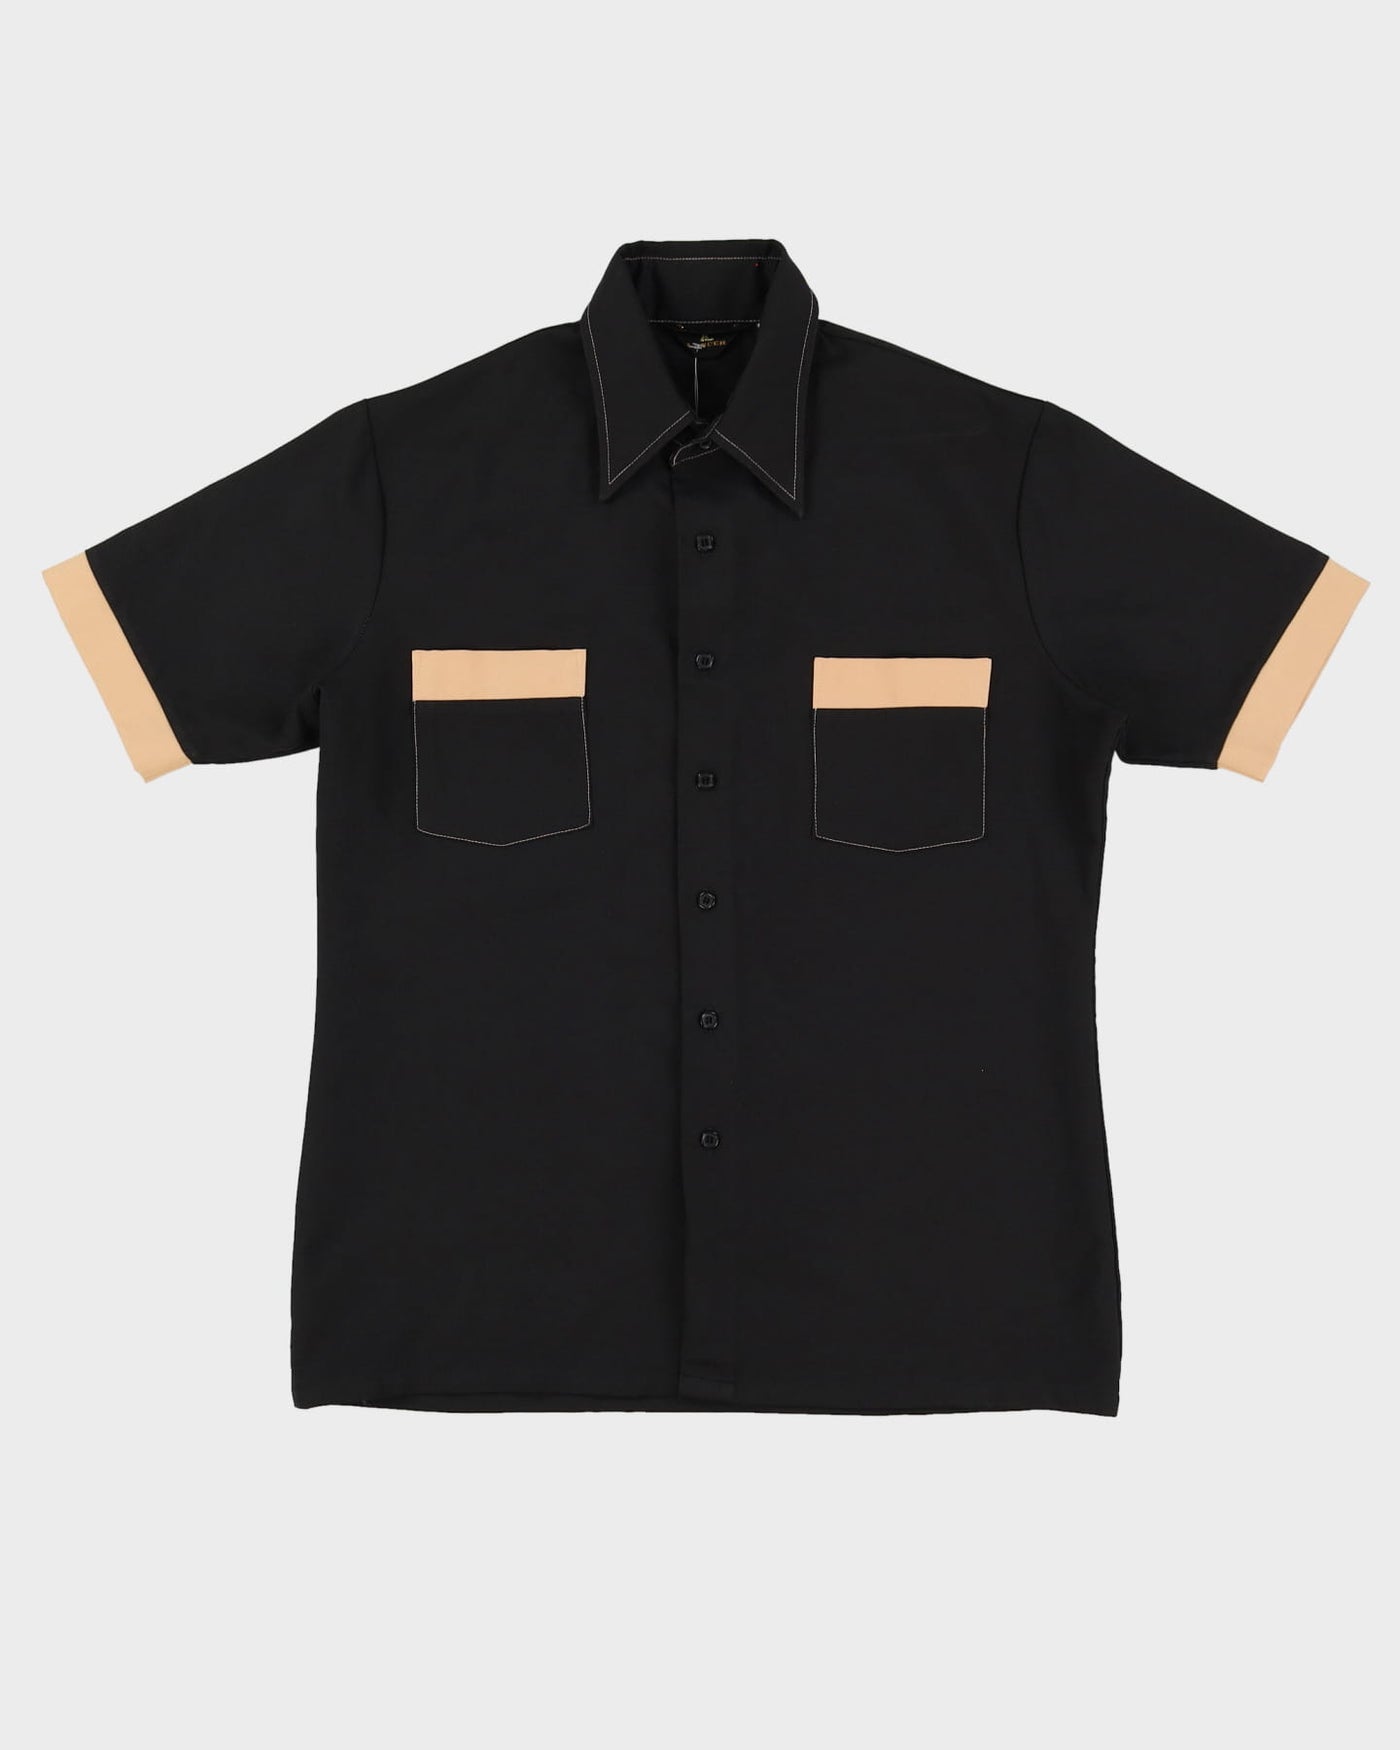 Vintage 70s Lancer Black Short-Sleeve Work Shirt - L